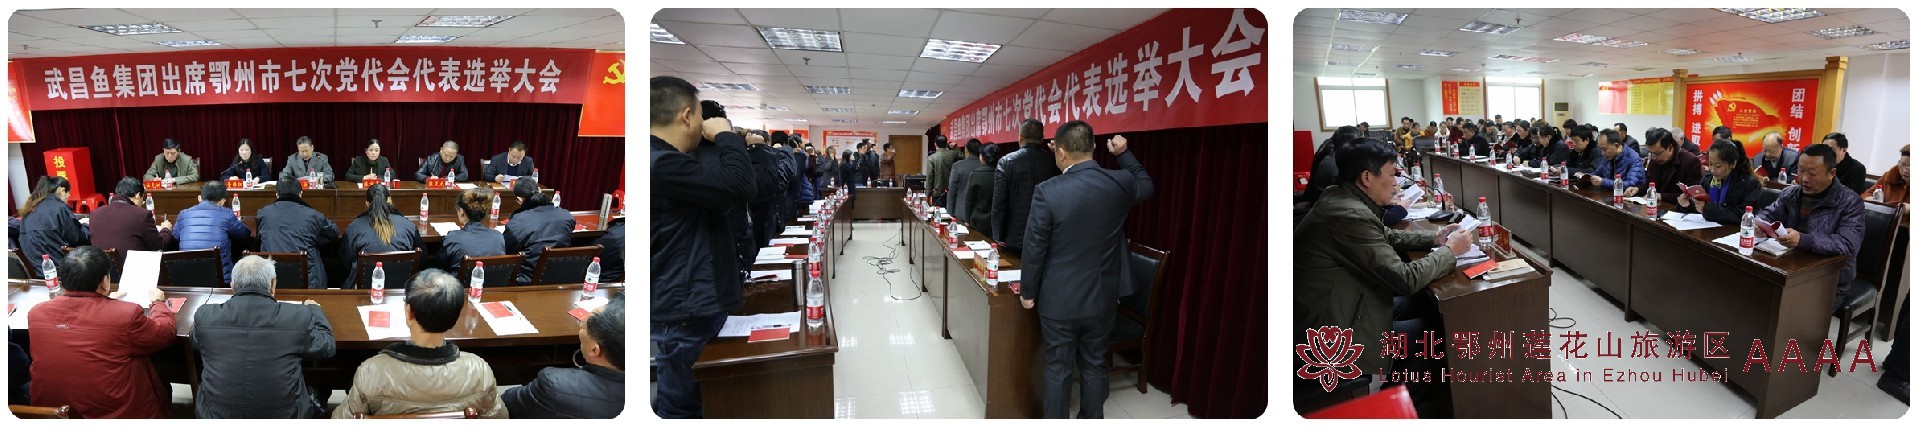 武昌鱼集团出席鄂州市七次党代会代表选举大会隆重召开